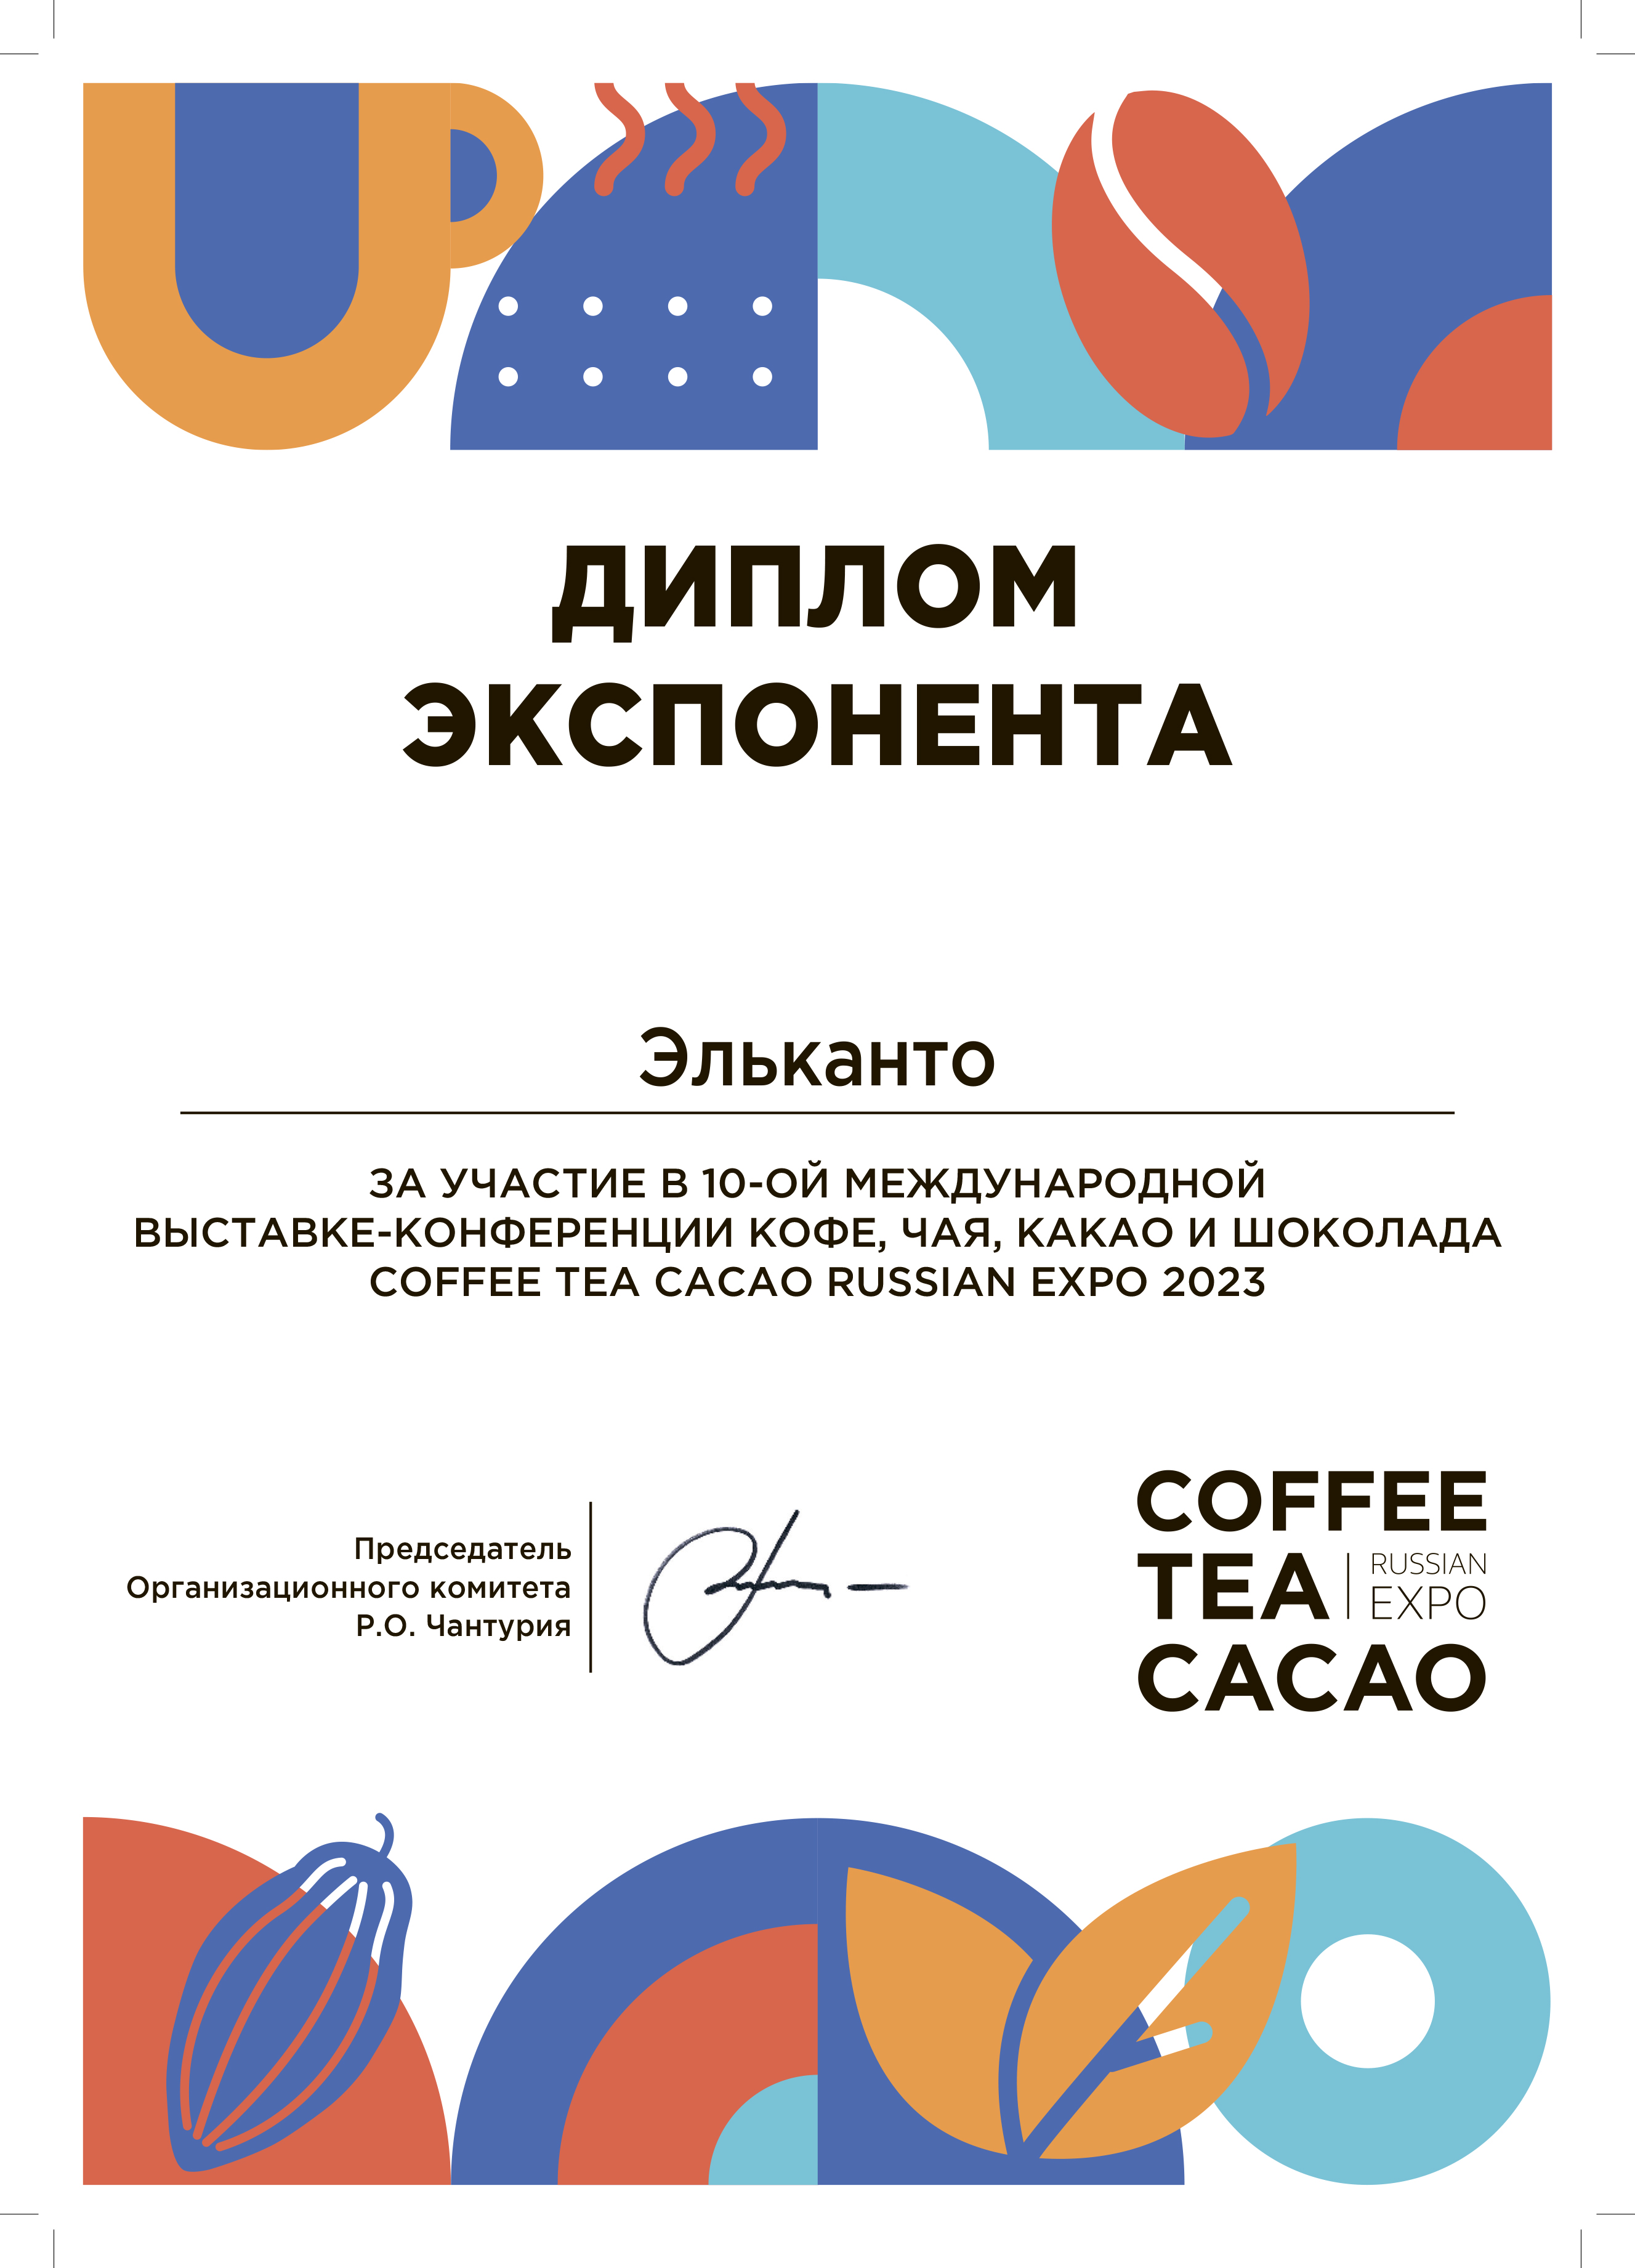 Диплом Coffee Tea Cacao Russian Expo 2023!